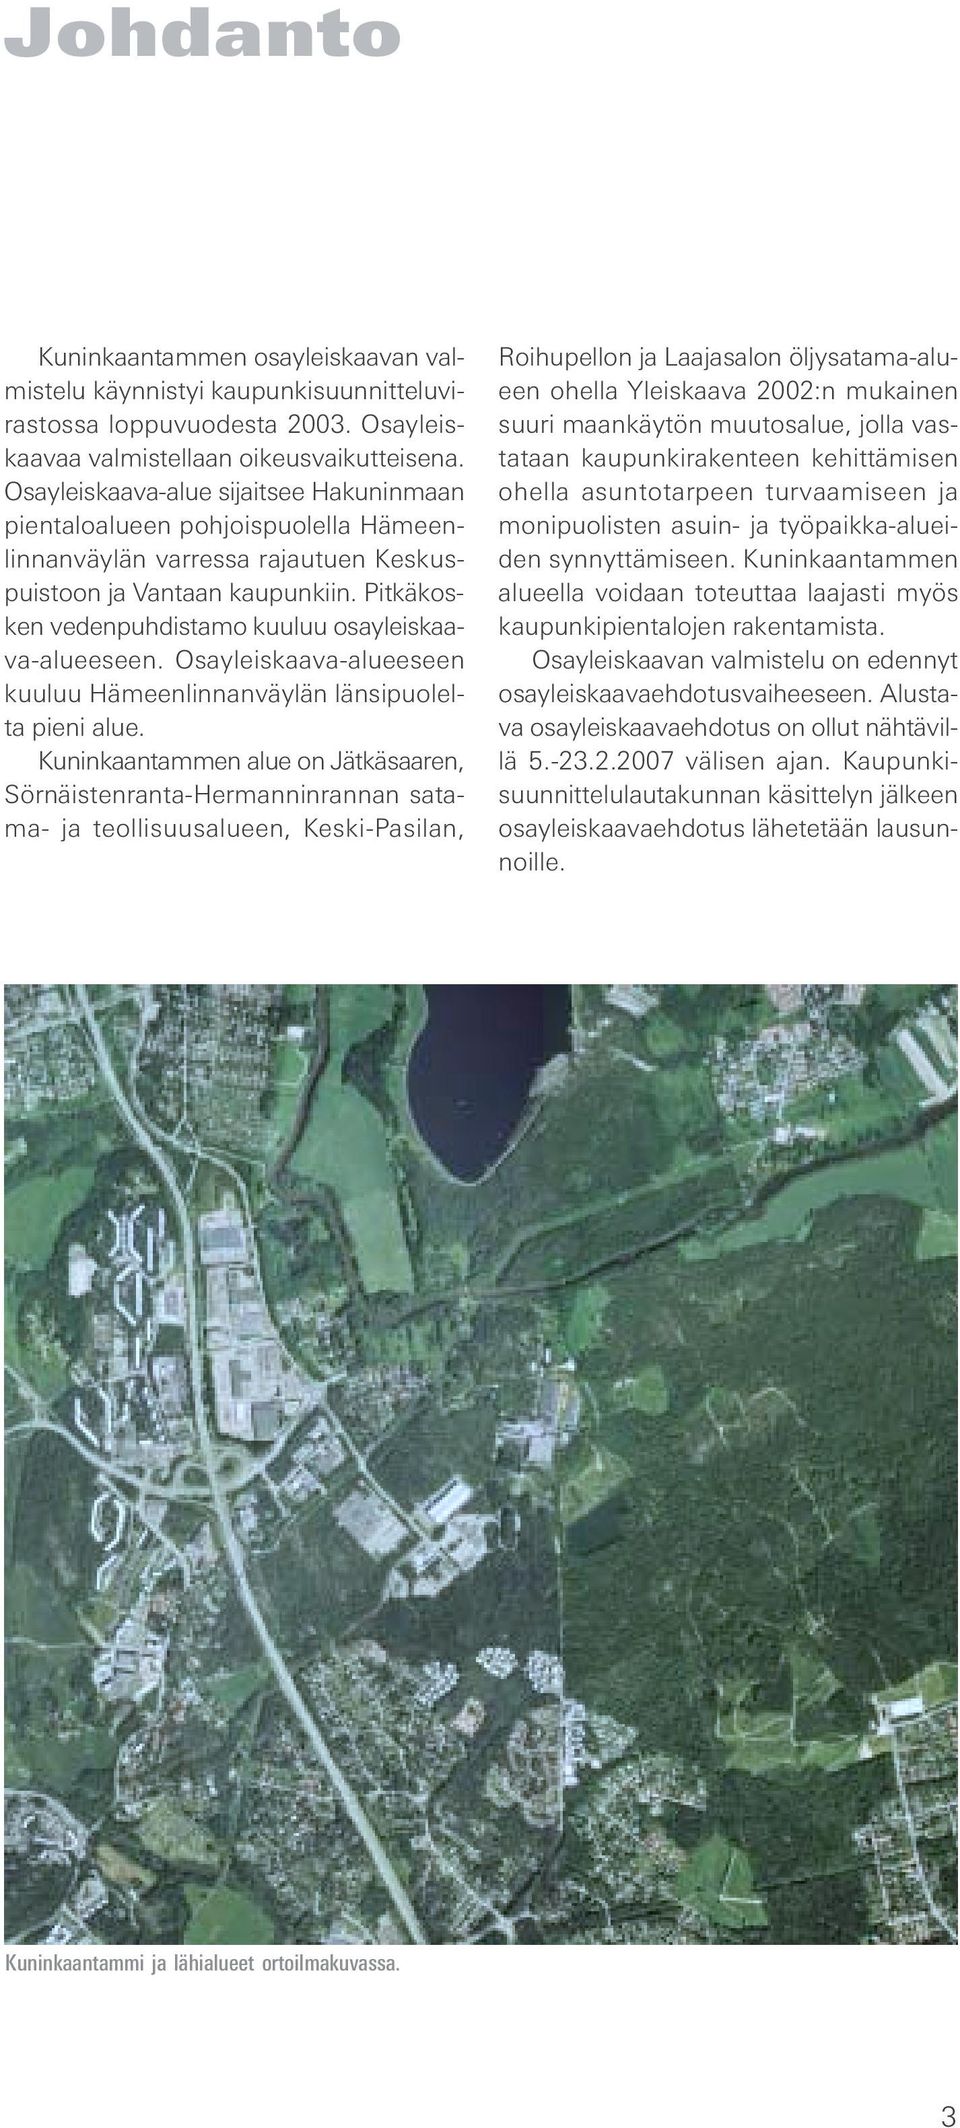 Pitkäkosken vedenpuhdistamo kuuluu osayleiskaava-alueeseen. Osayleiskaava-alueeseen kuuluu Hämeenlinnanväylän länsipuolelta pieni alue.